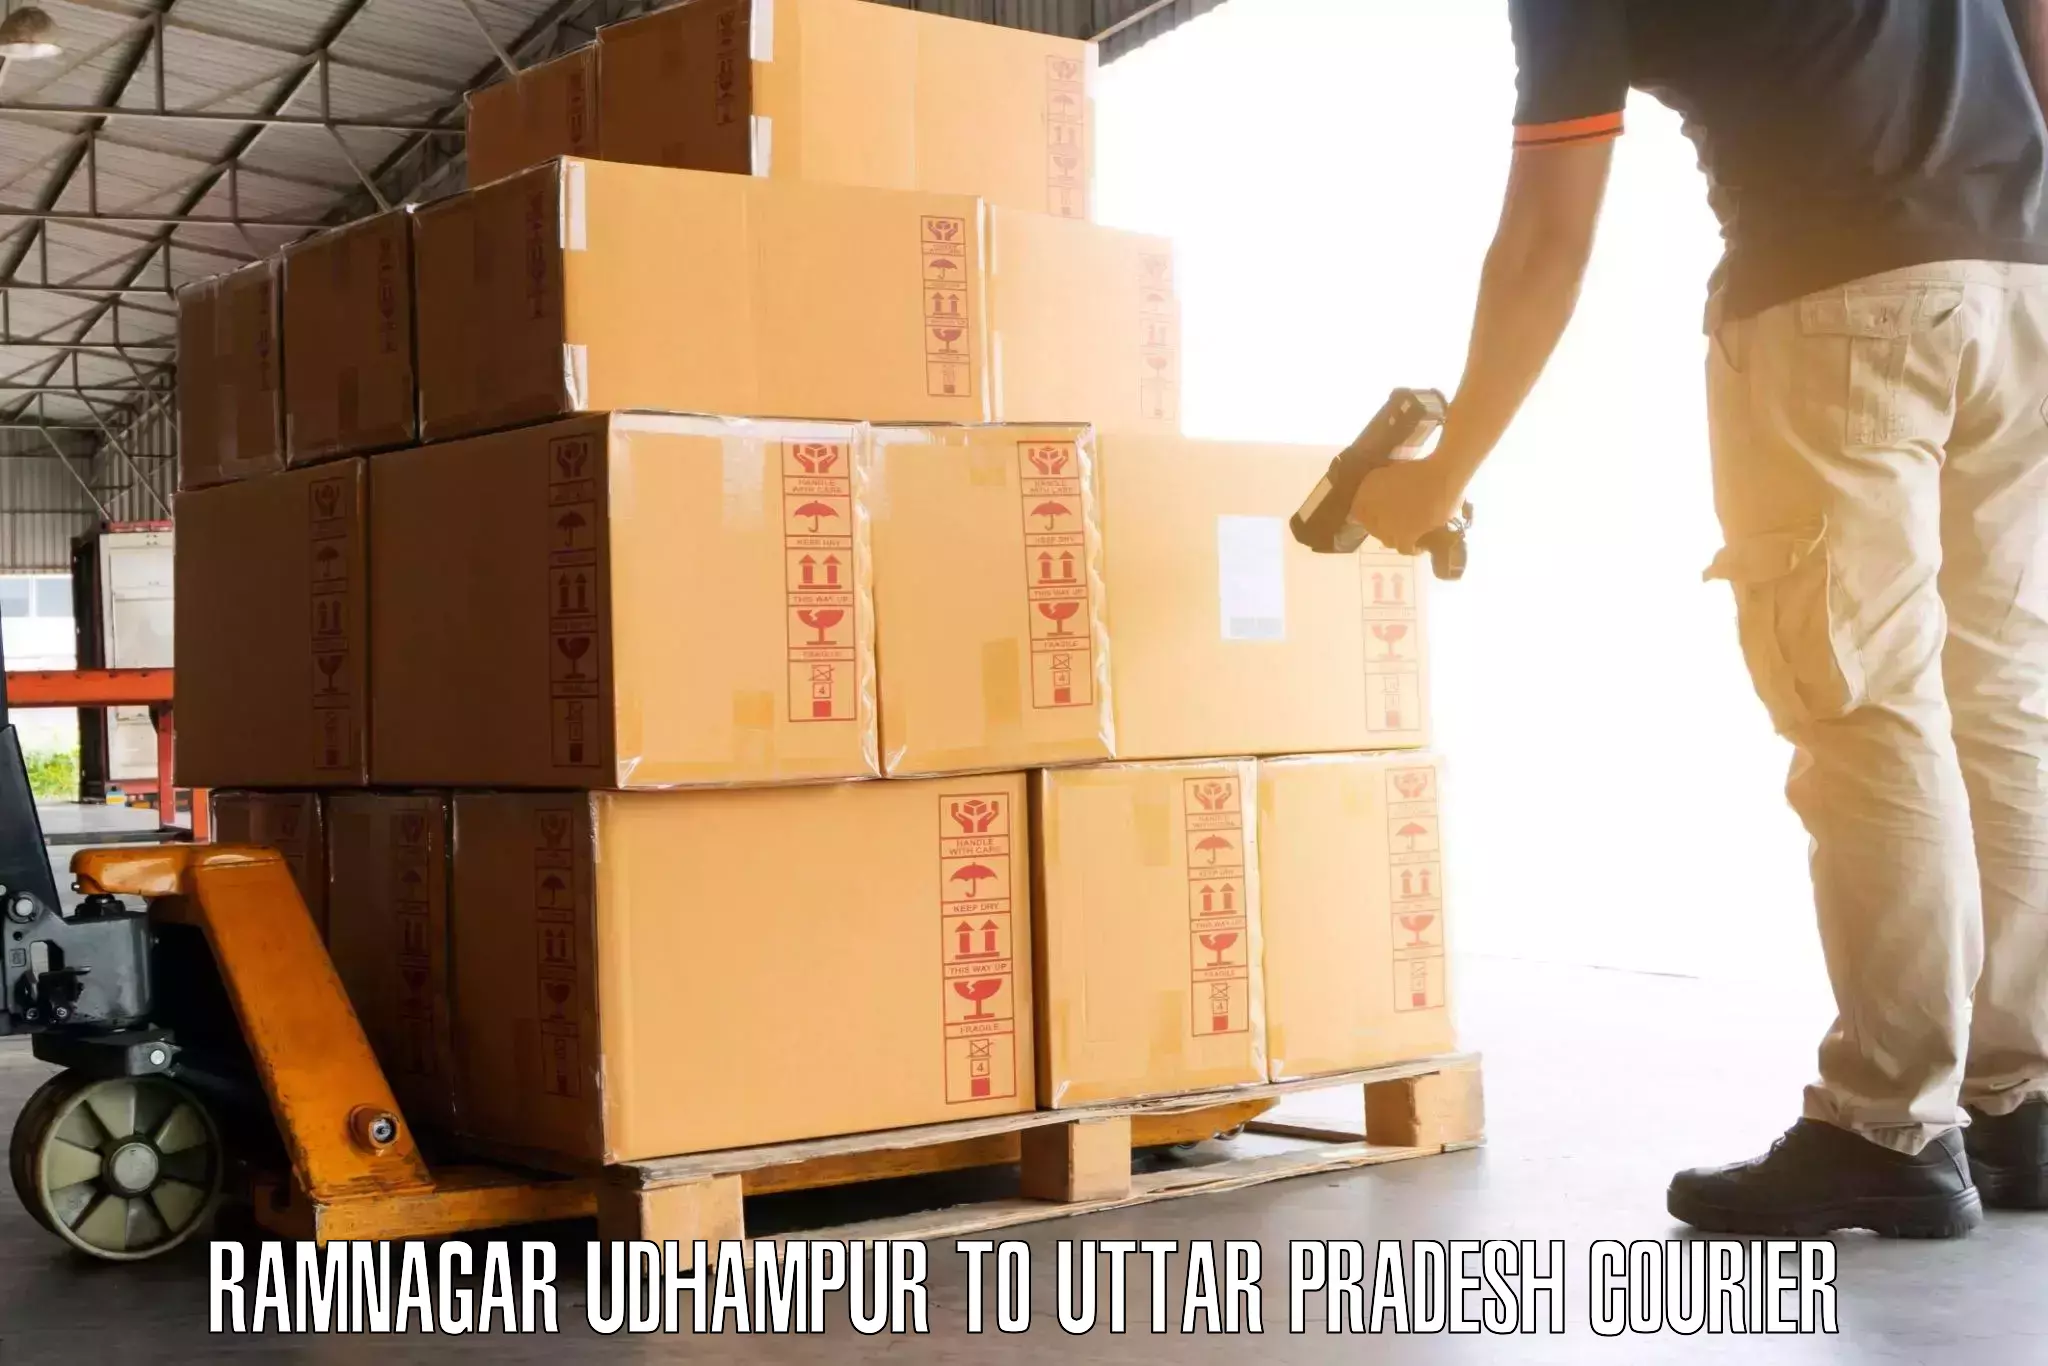 Luggage shipment specialists Ramnagar Udhampur to Mehnagar